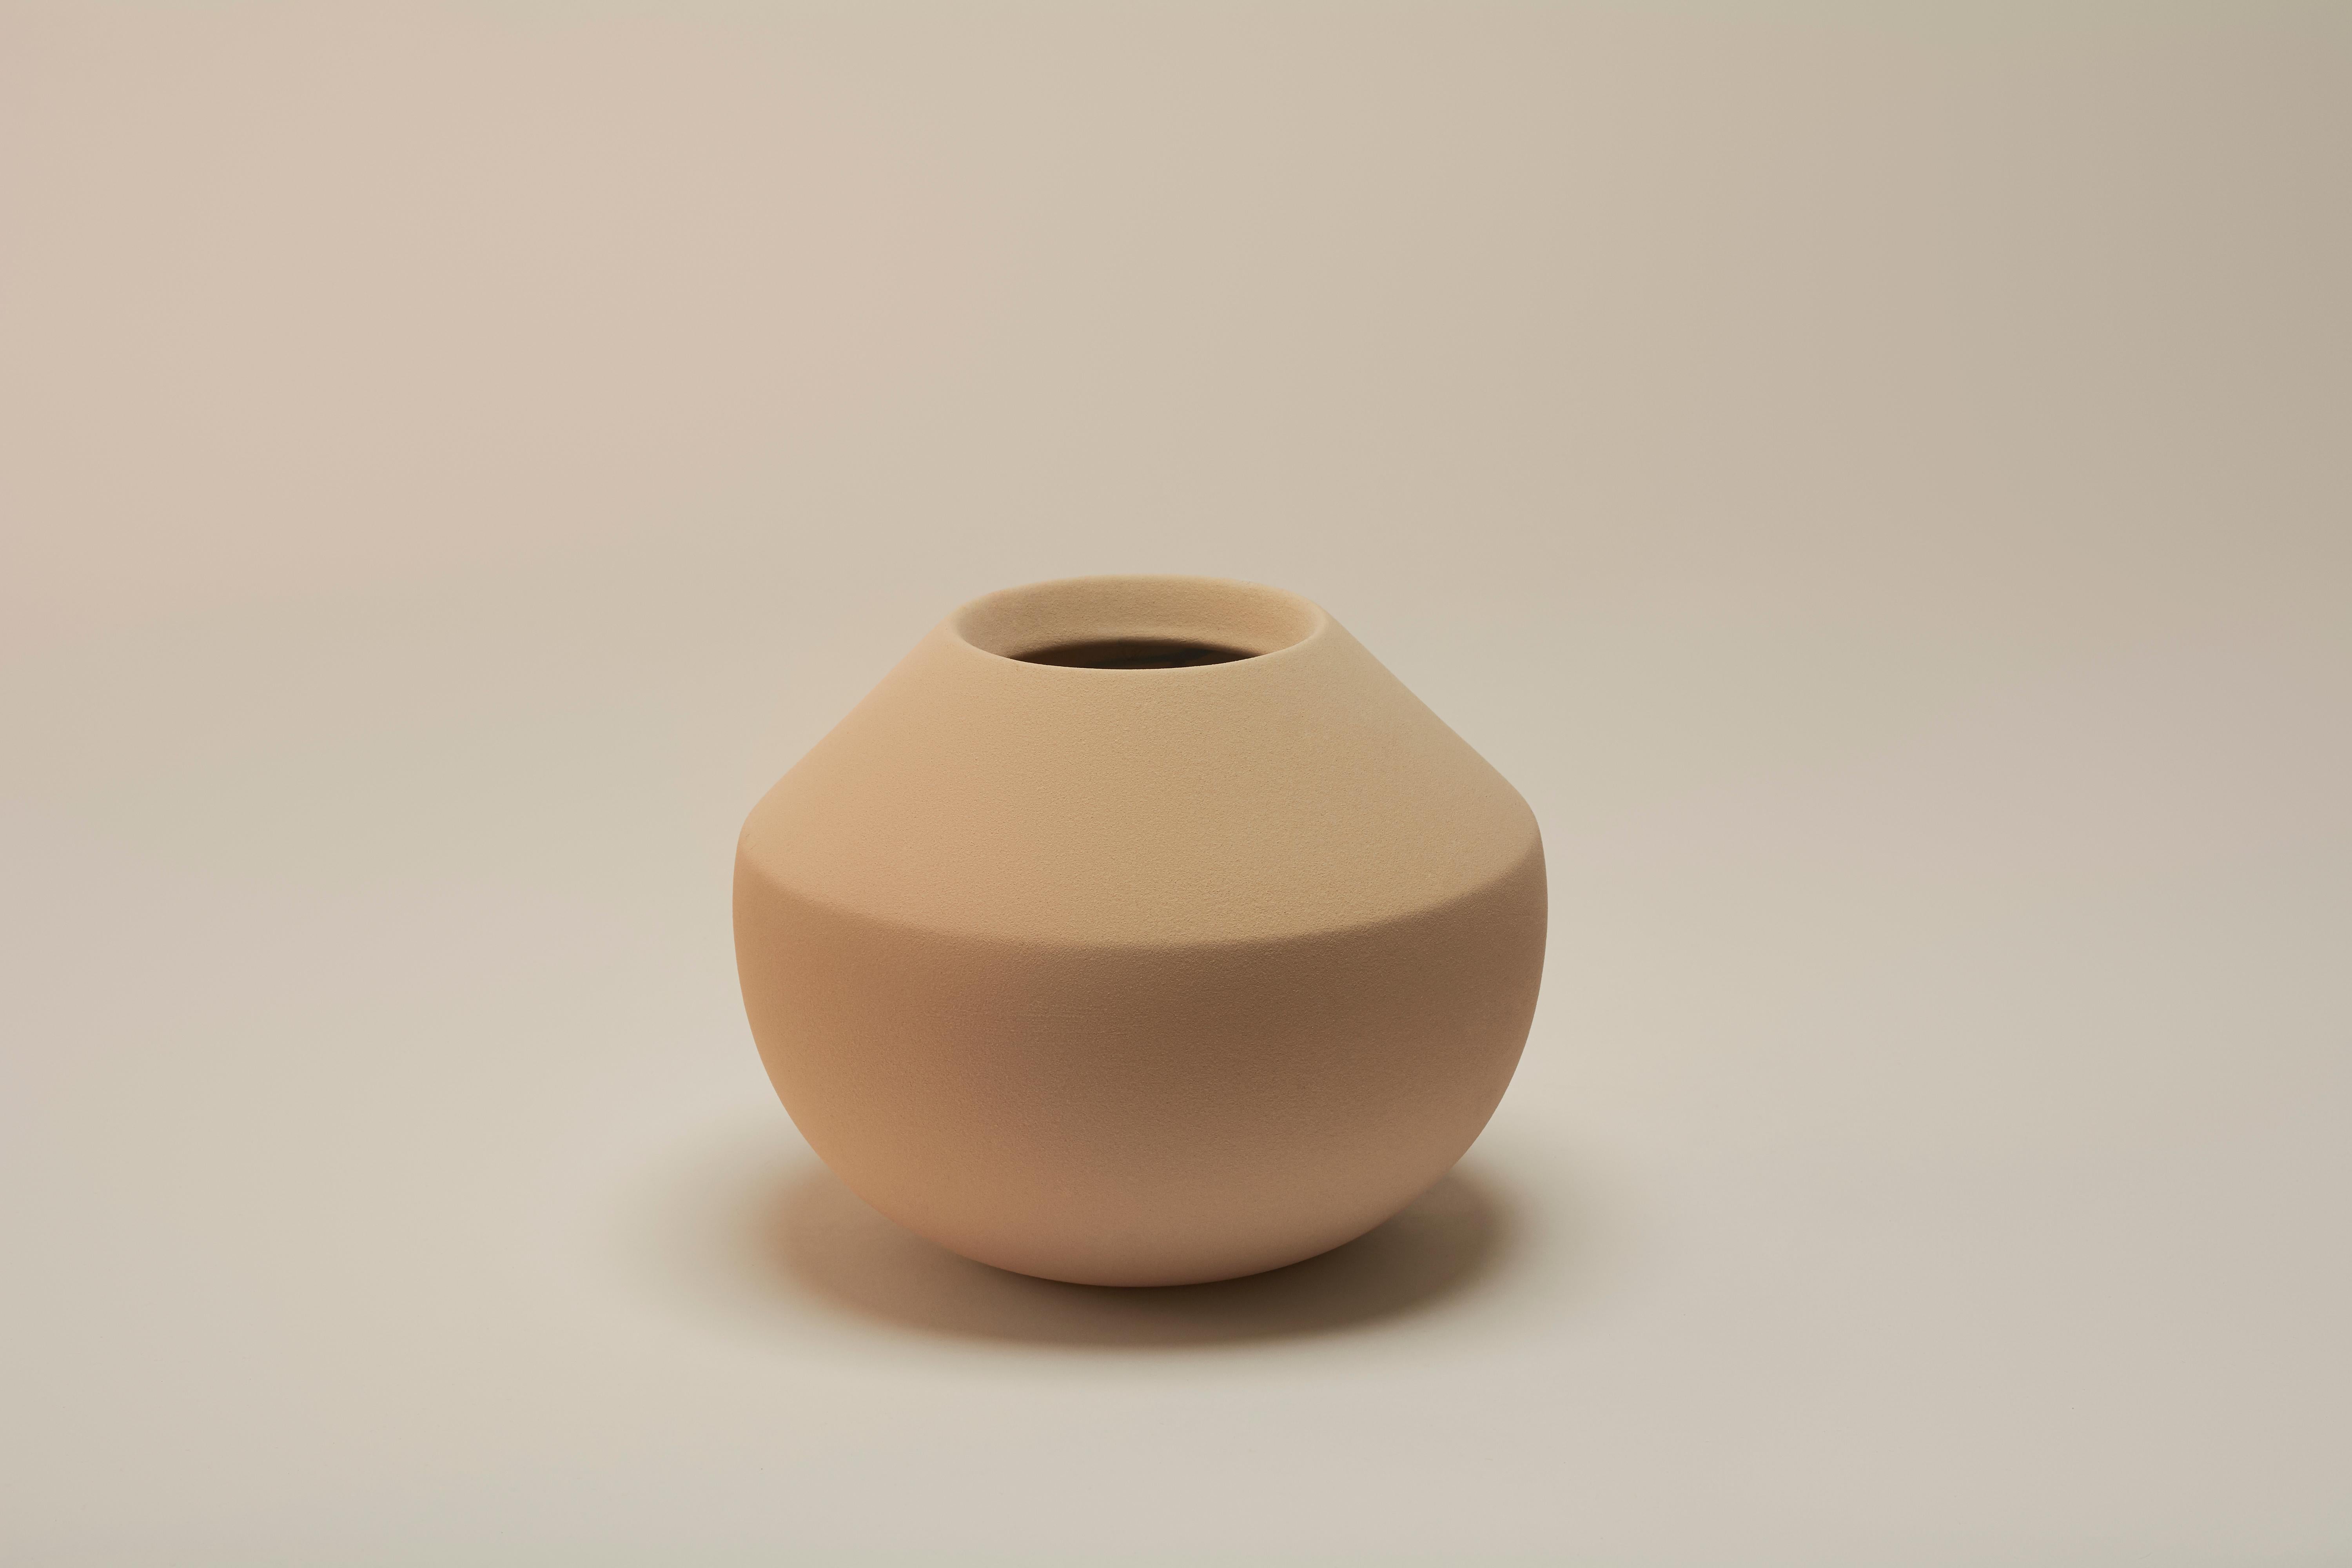 Apo-Vase von Lilia Cruz Corona Garduño
Abmessungen: B 19 x T 19 x H 16 cm
MATERIALIEN: Hochtemperaturkeramik (Steinzeug) und keramische Glasur

Das Studio Platalea ist aus einer Leidenschaft für Kunst und Design entstanden. Wir finden es toll, dass